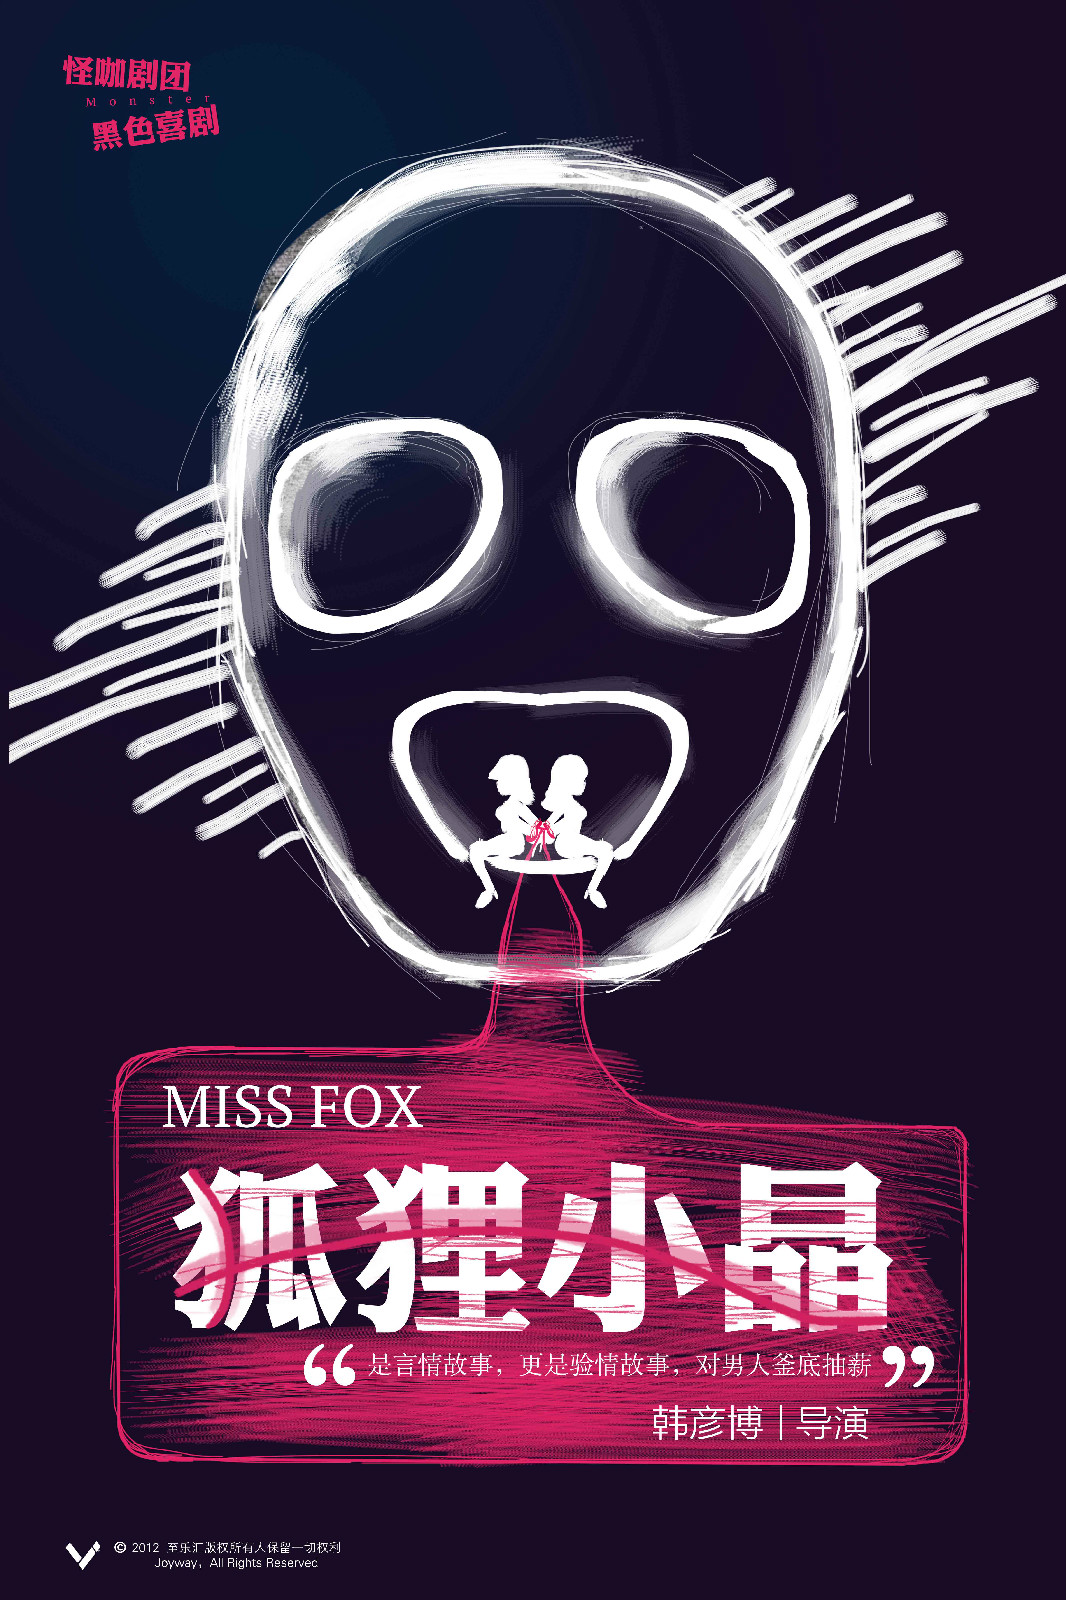 Miss Fox